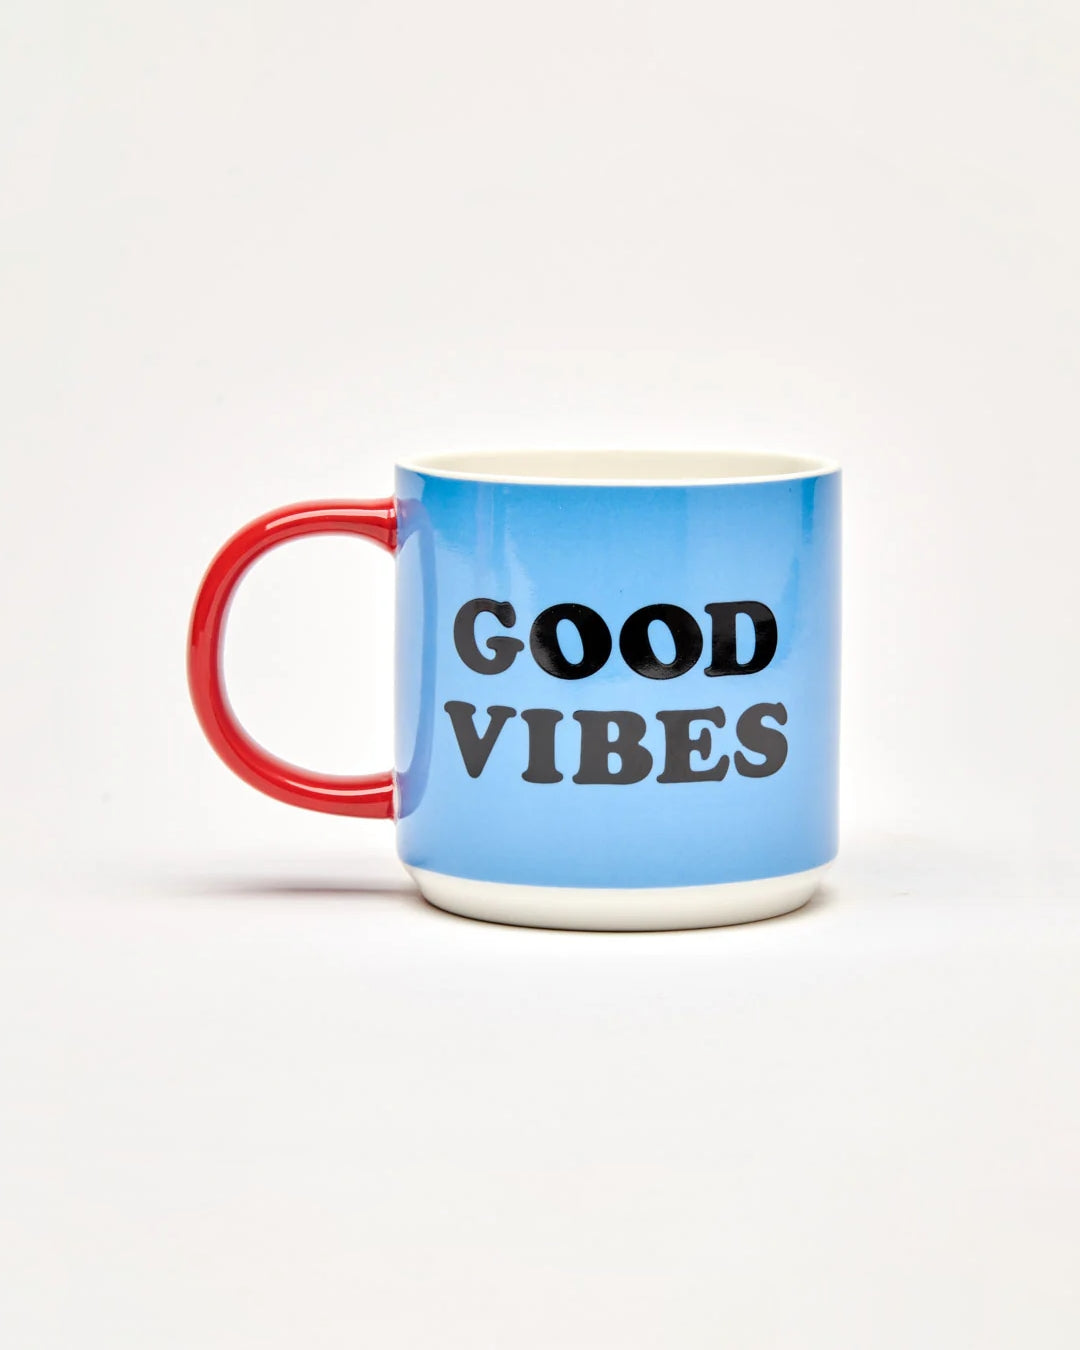 Peanuts Mug - Good Vibes [PRE ORDER]